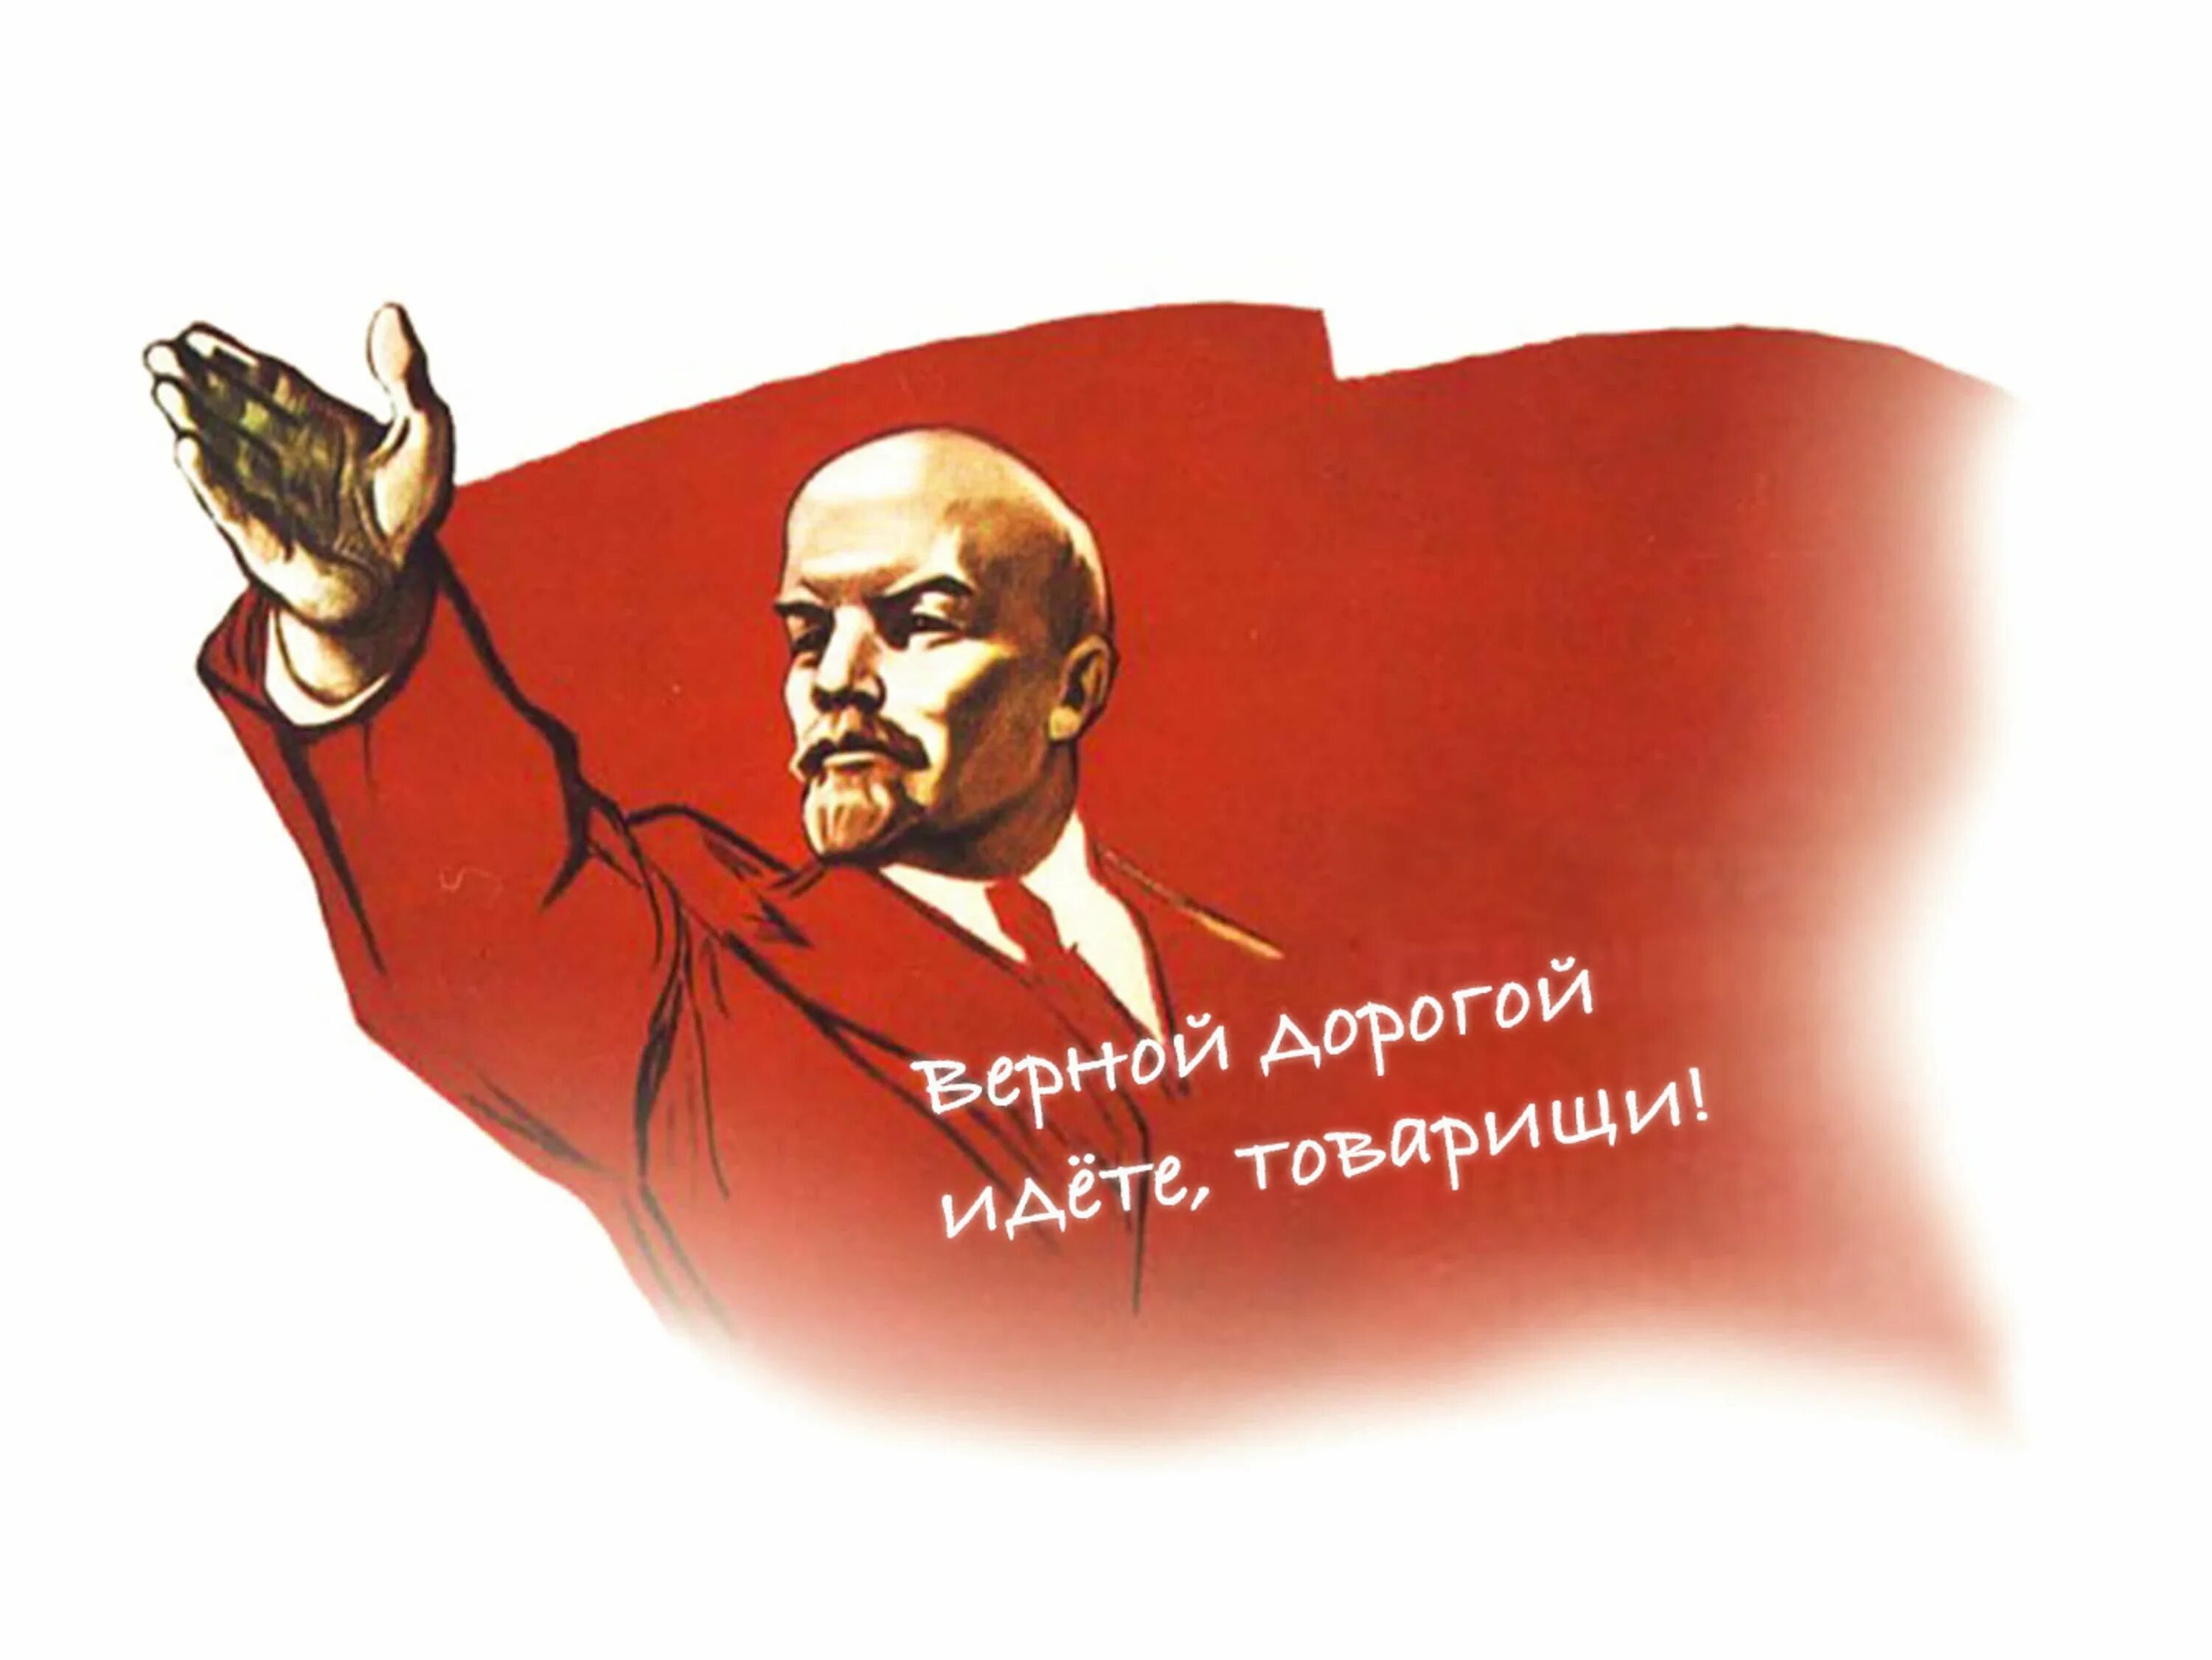 Ленин на прозрачном фоне. Ленин 1917. Пошла ты дорогая